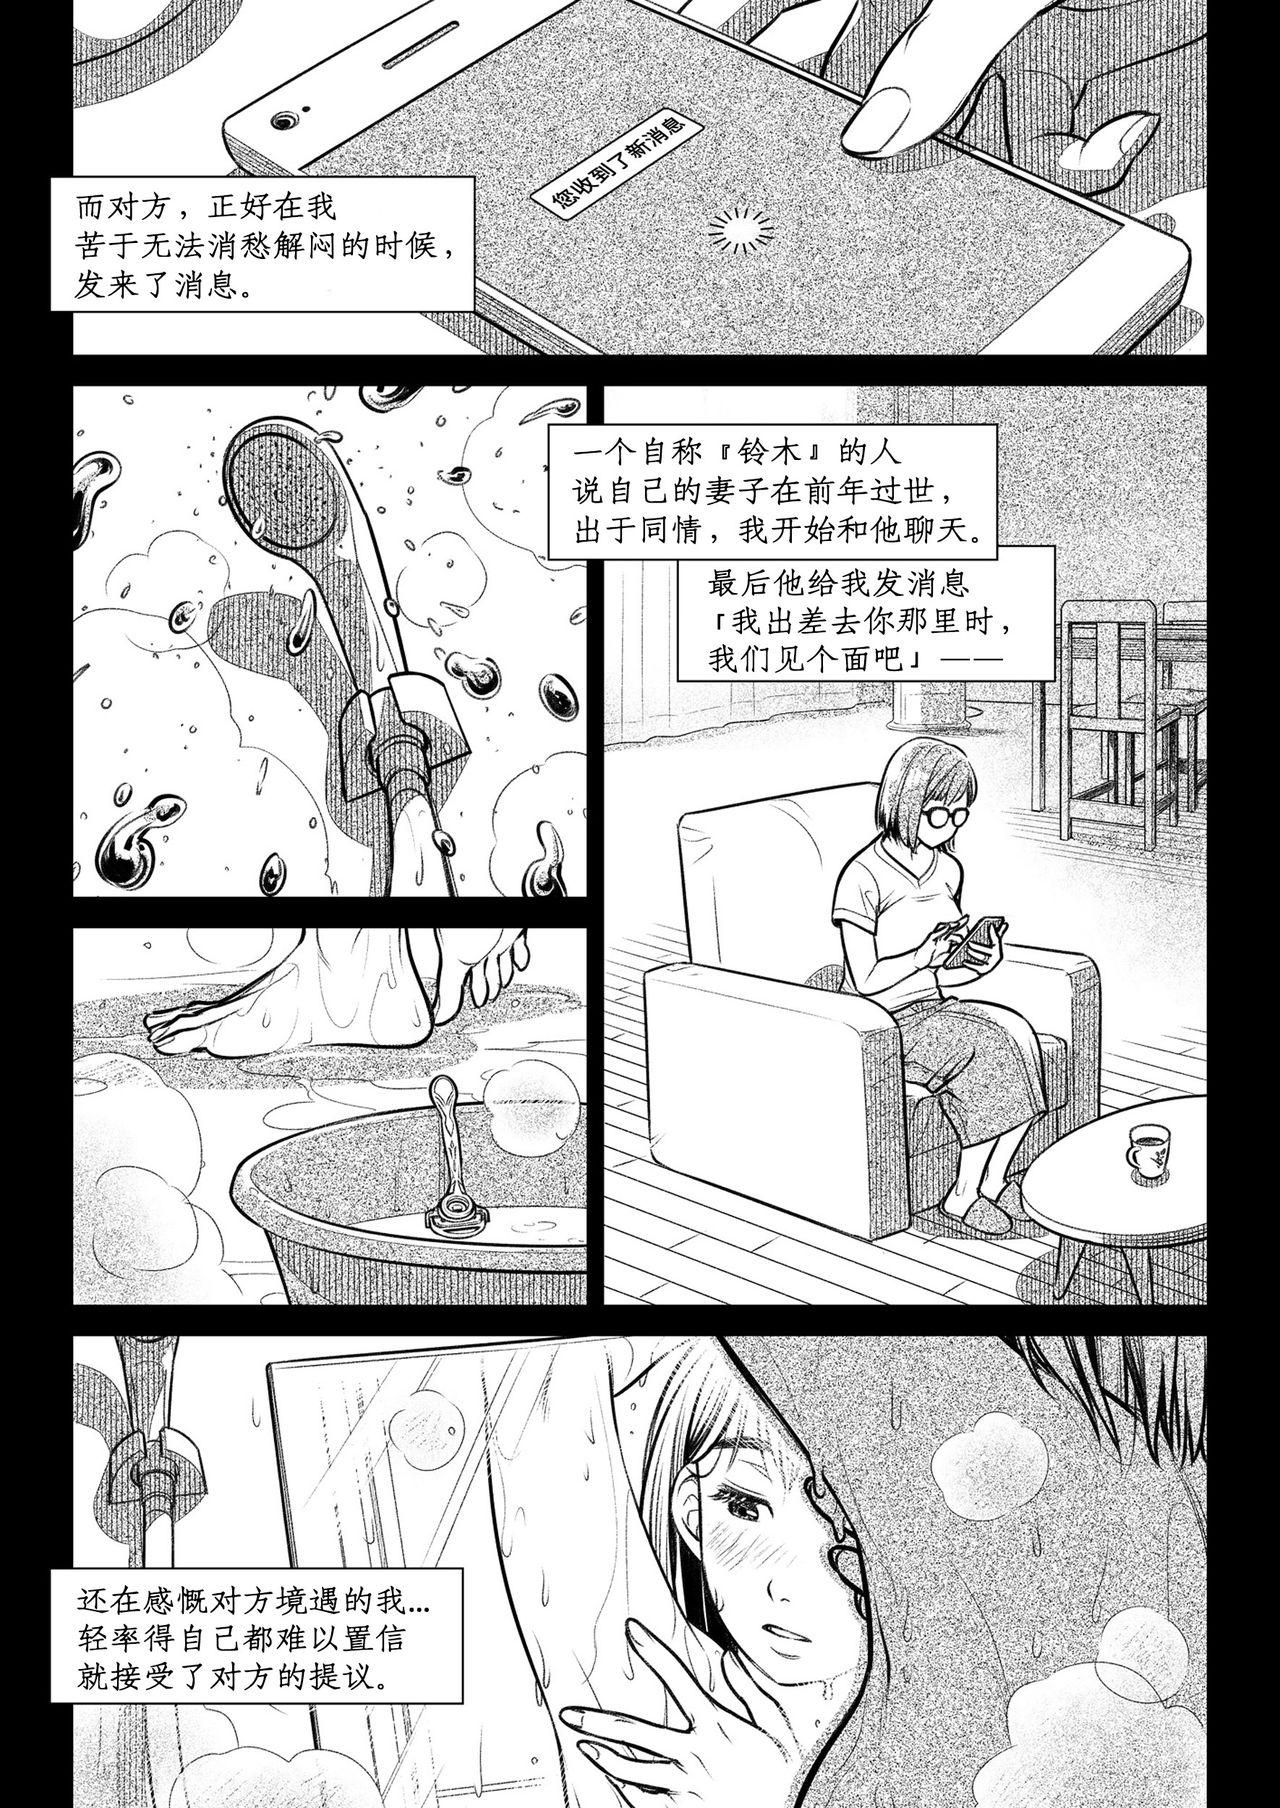 Cojiendo Kurata Akiko no Kokuhaku 2 - Confession of Akiko kurata Epsode 2 | 仓田有稀子的告白 第2话 - Original De Quatro - Page 10